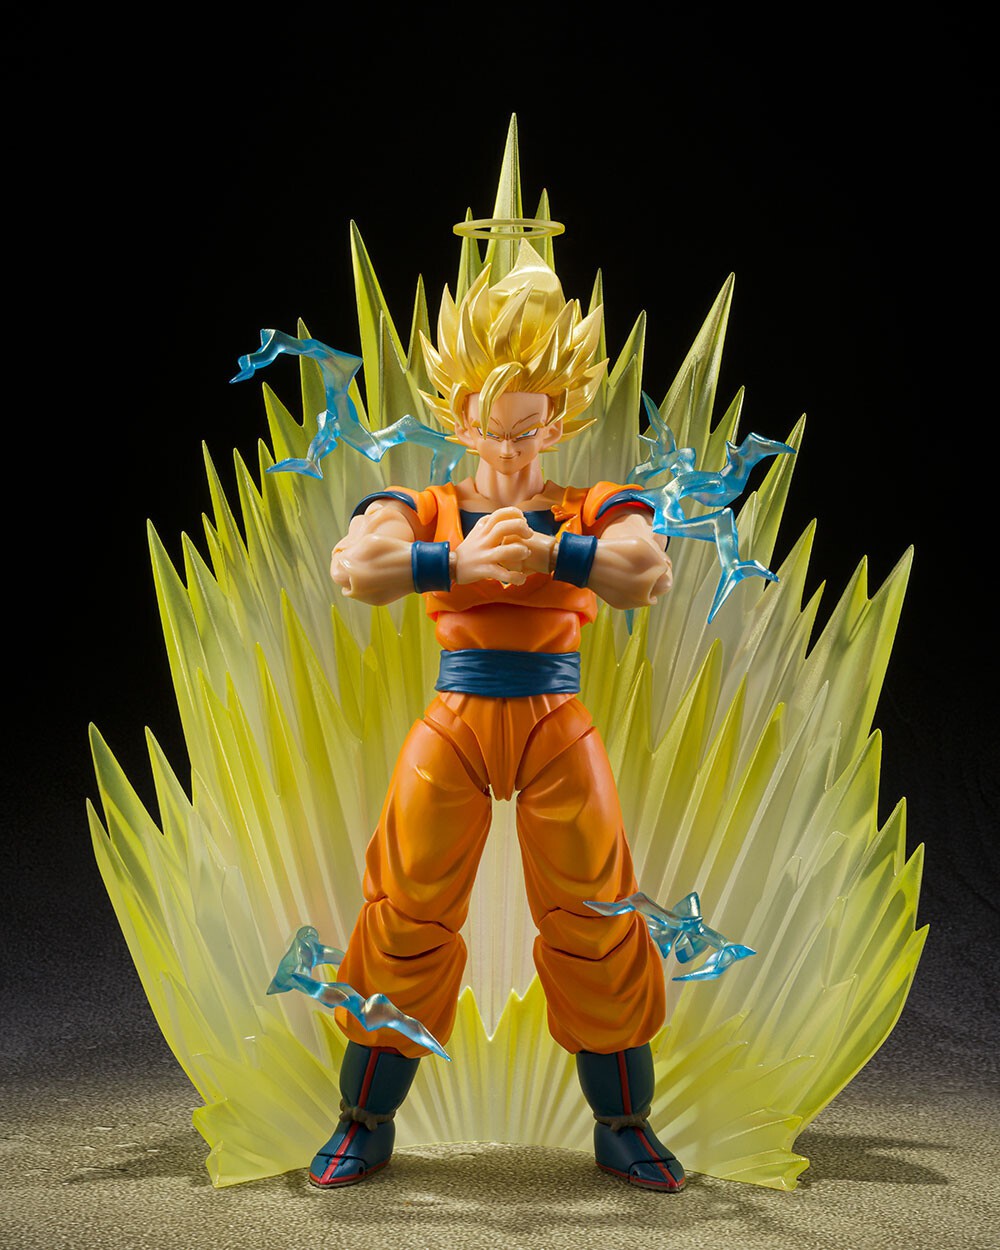 Figura Dragon Ball Z Goku Super Sayajin Super Master Bandai